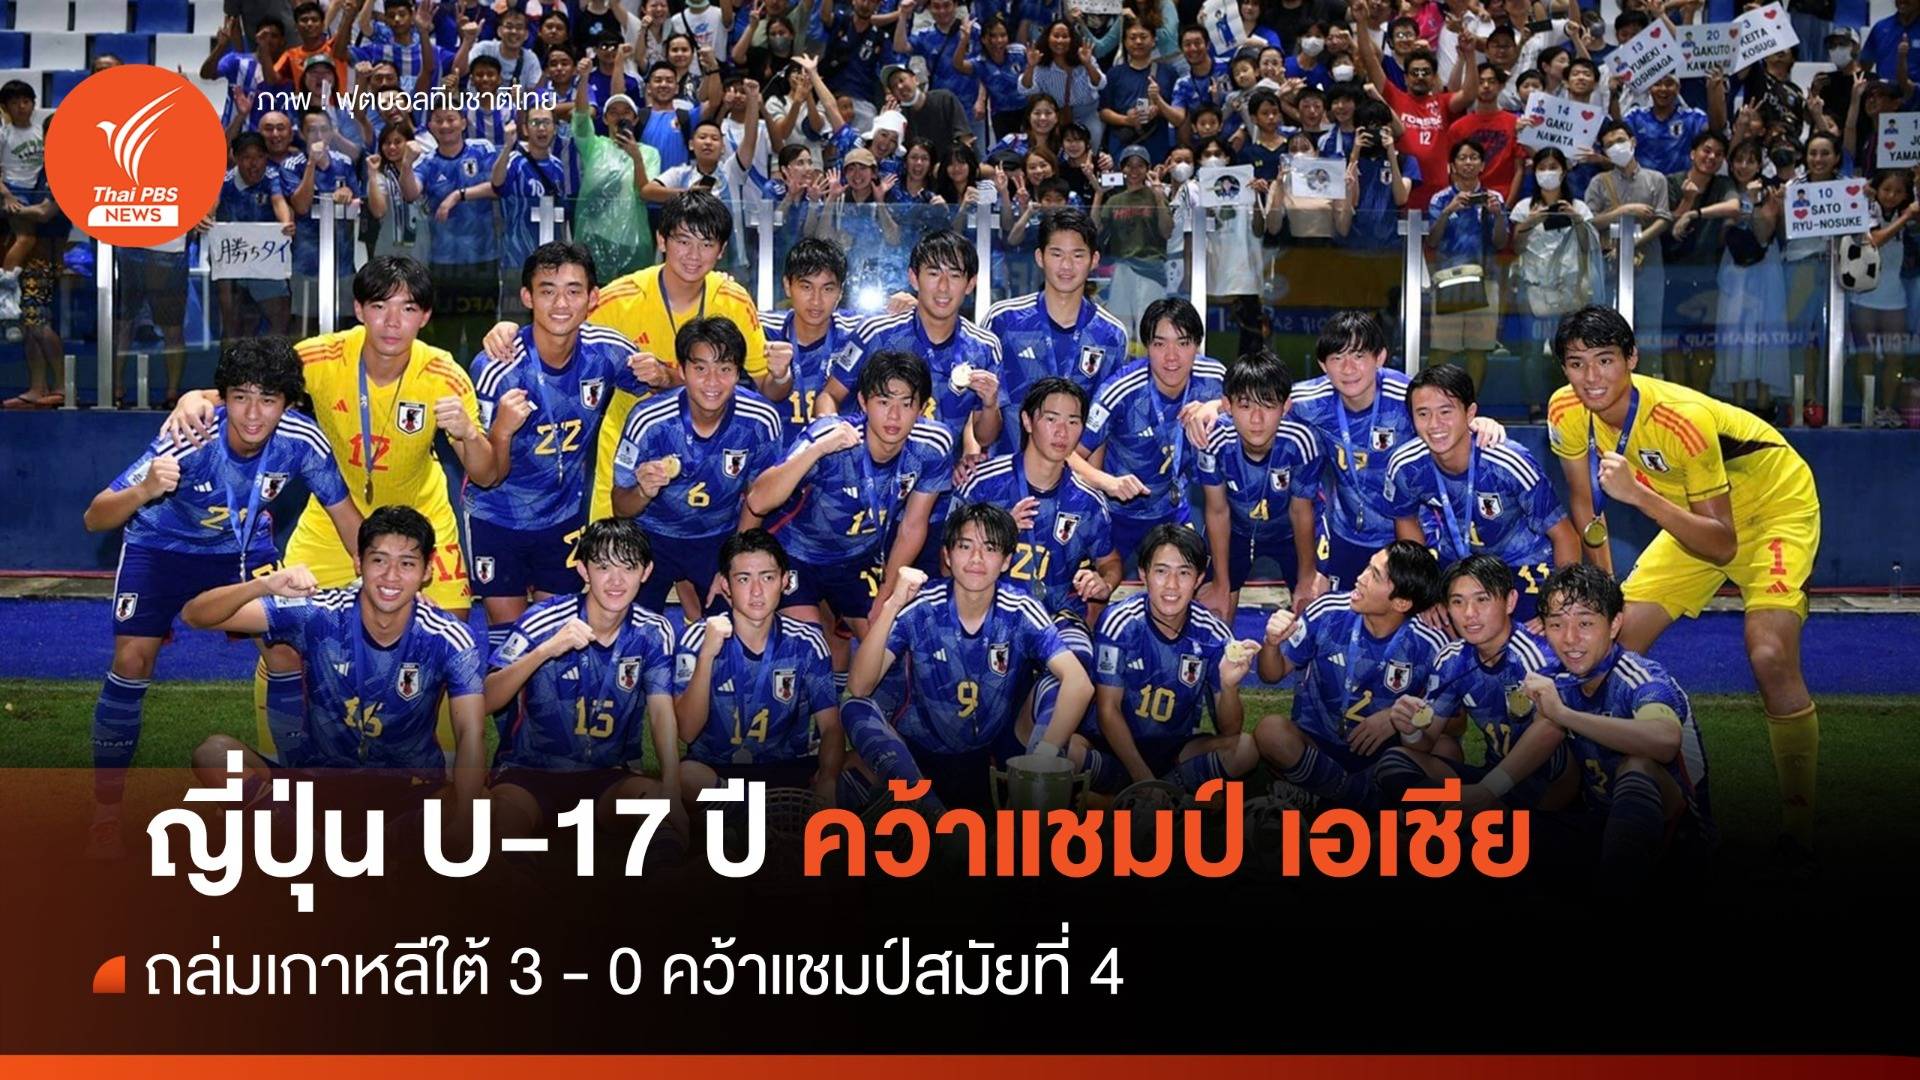 "ญี่ปุ่น" ถล่มเกาหลีใต้ 3-0 คว้าแชมป์ เอเชีย U-17 ปี 